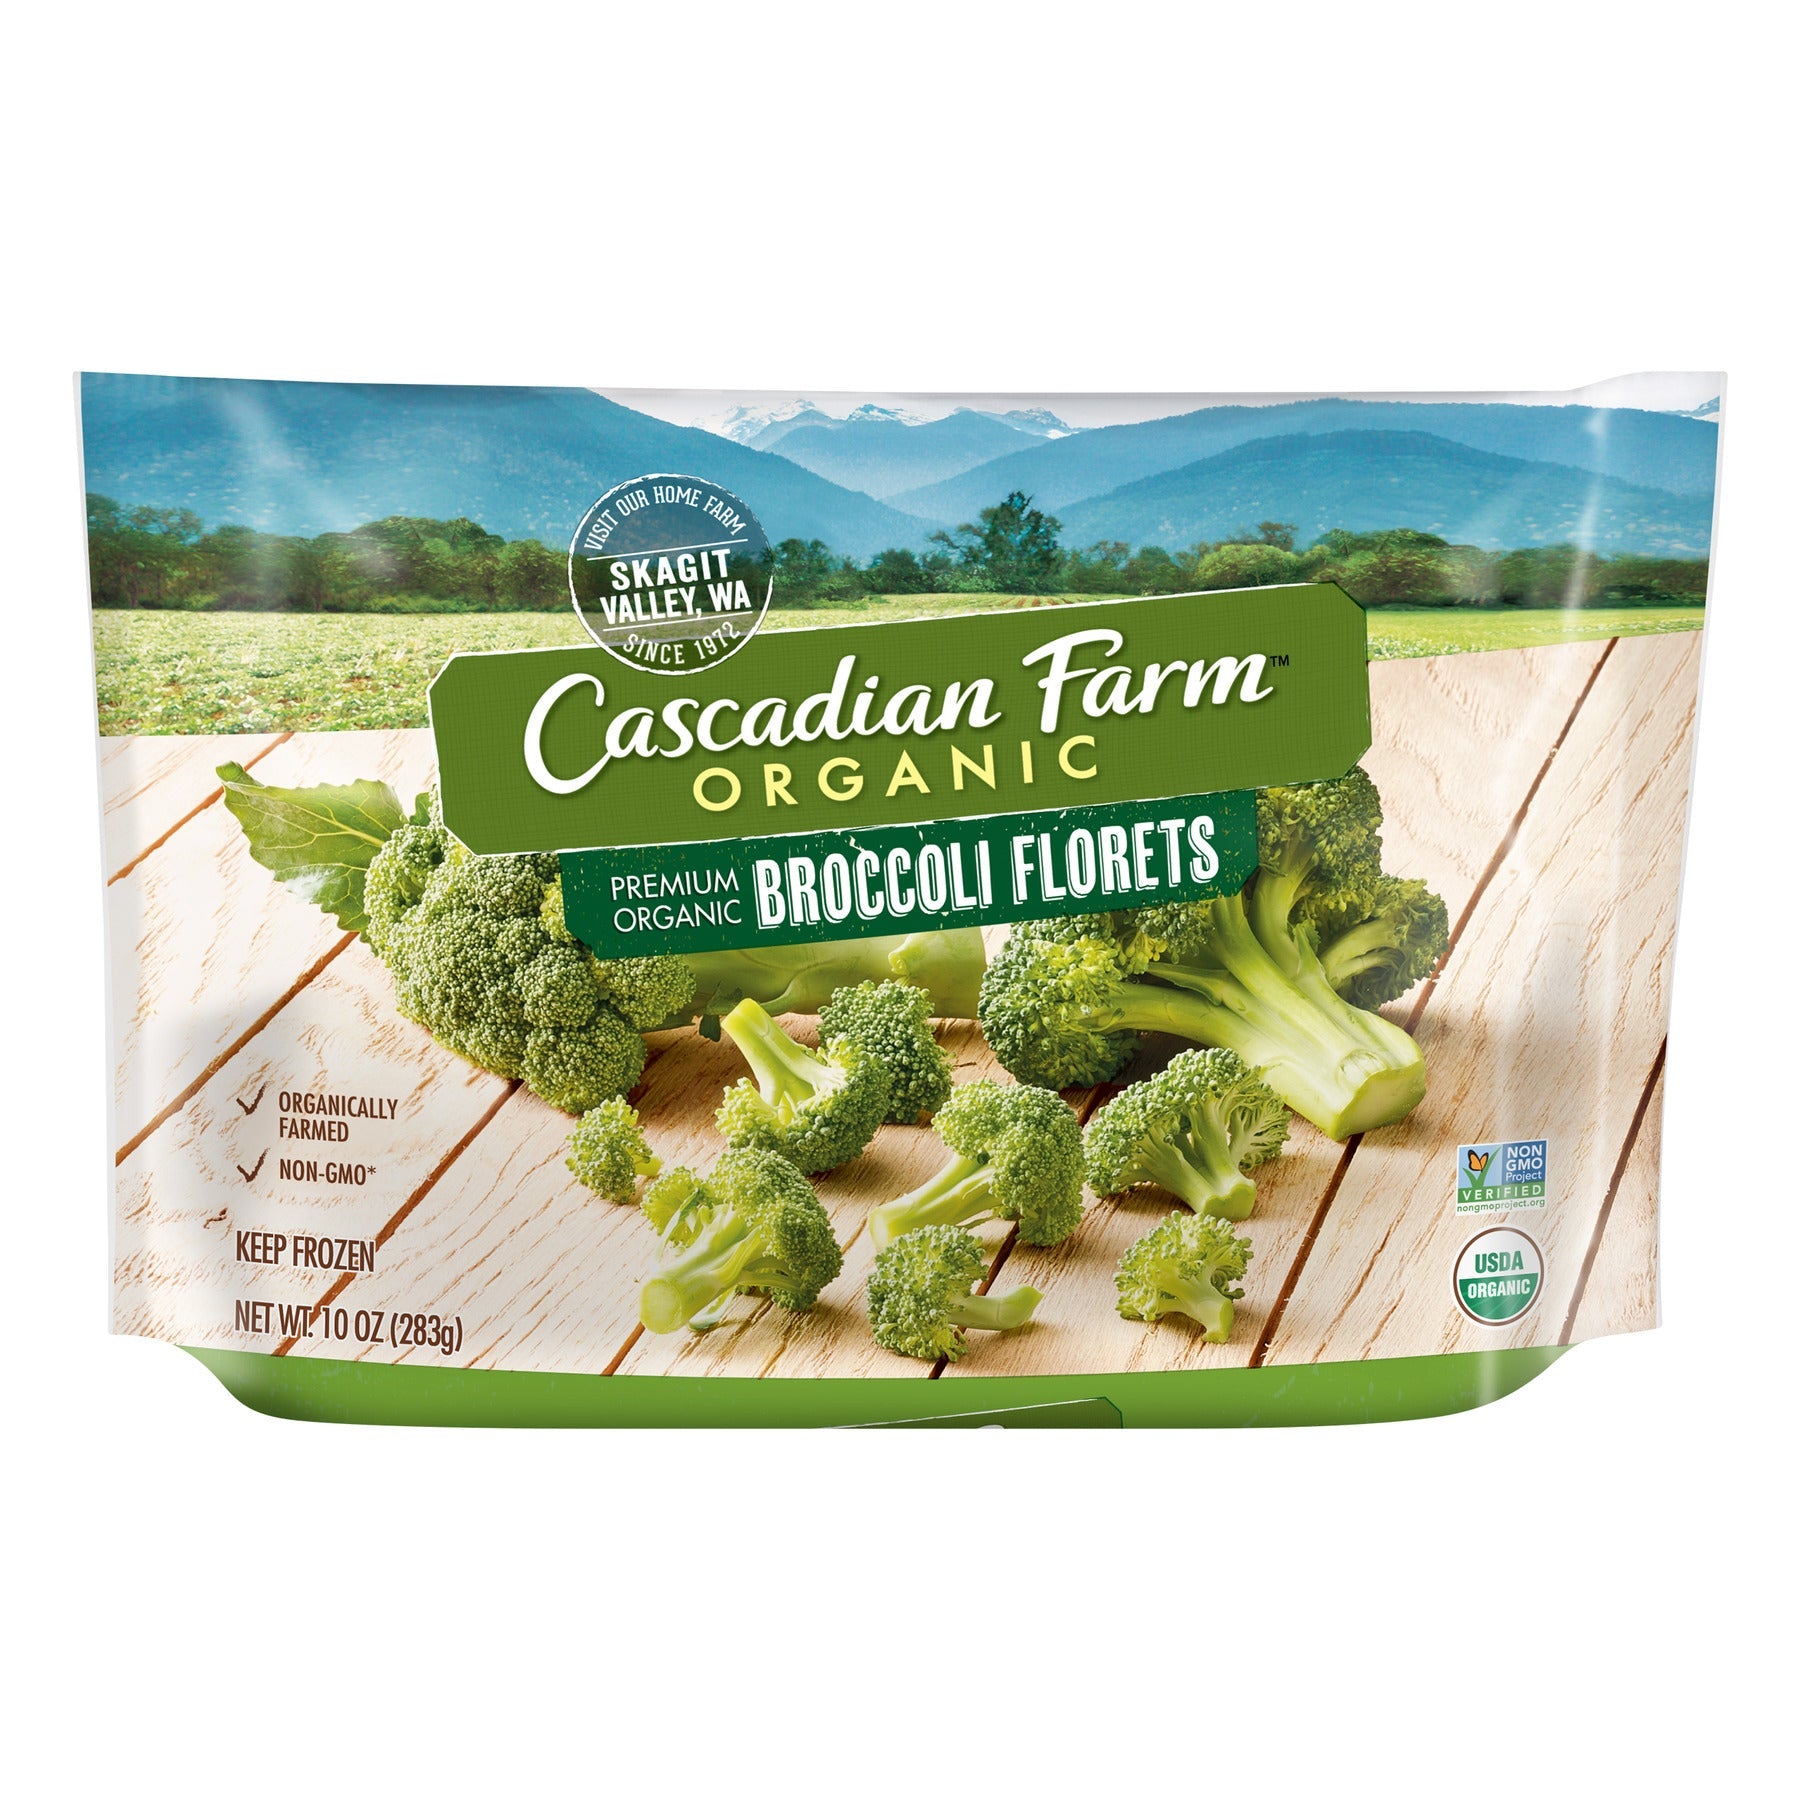 Cascadian Farm Organic Broccoli Florets 10 Oz Bag